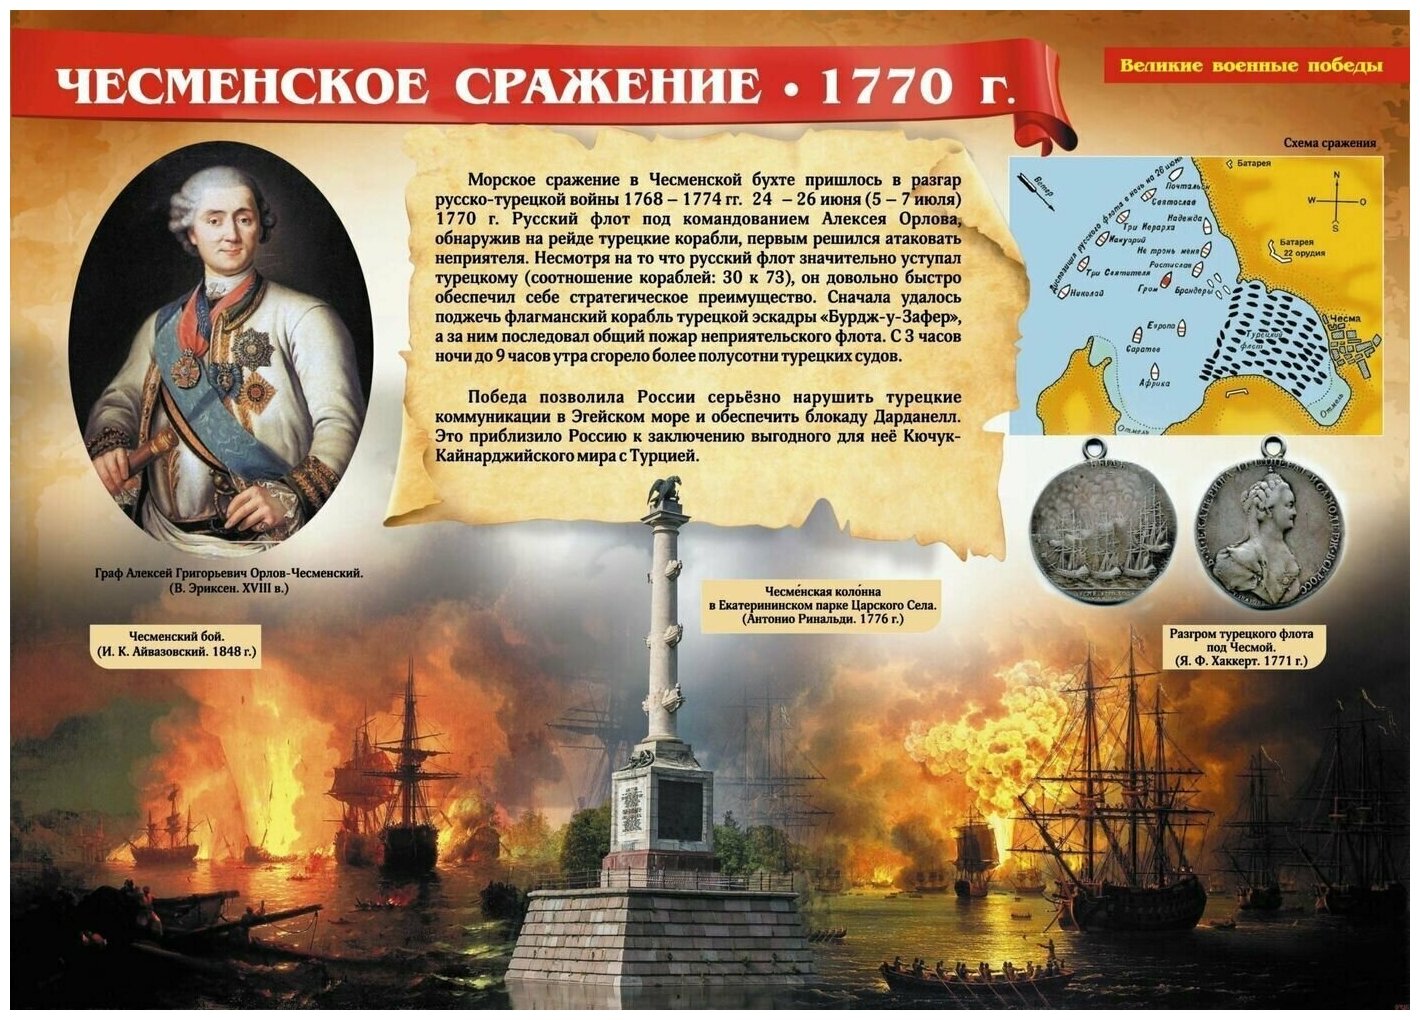 Комплект плакатов "Великие военные победы". 16 плакатов с методическим сопровождением. - фото №12